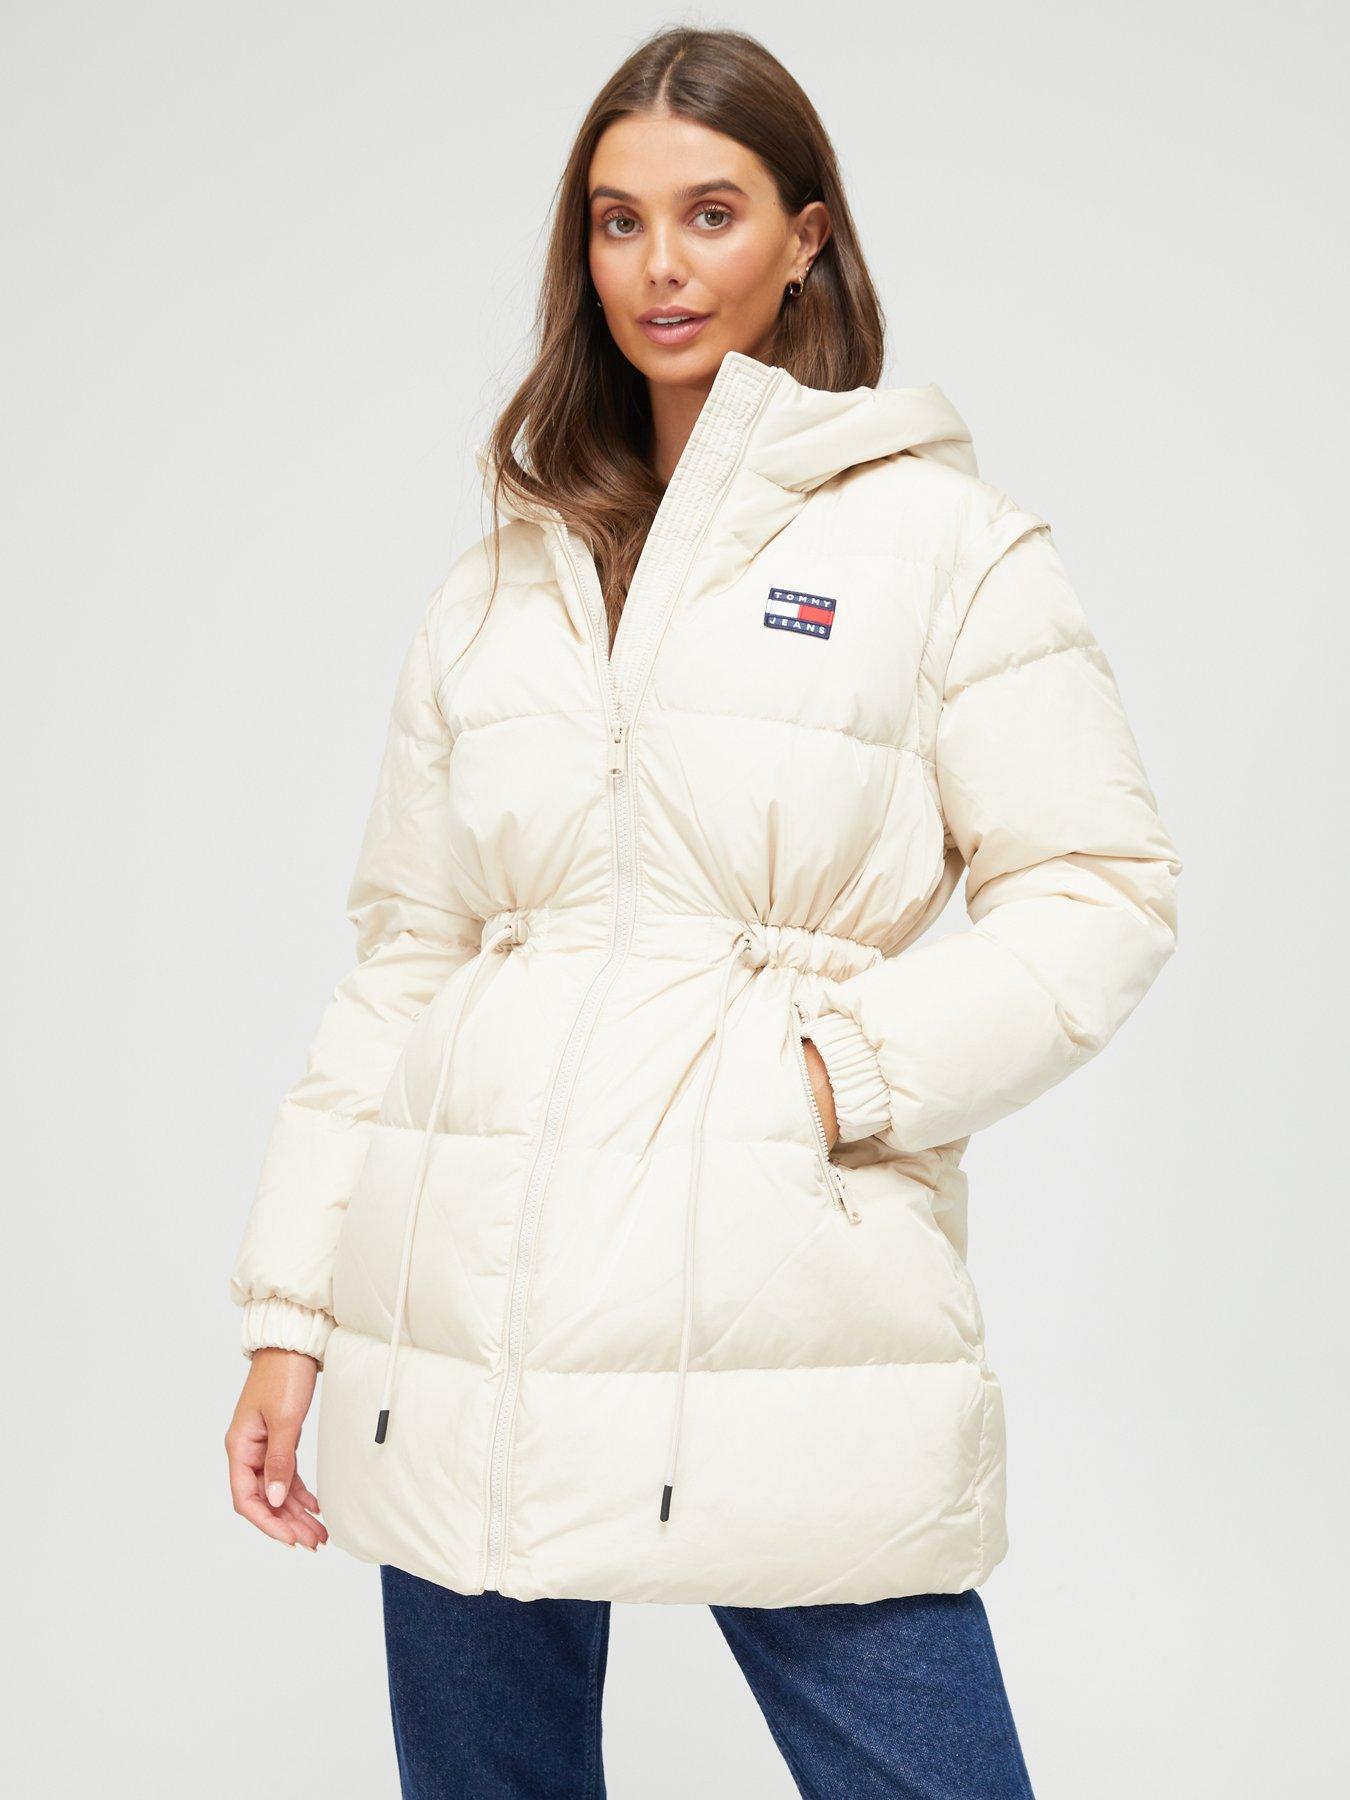 Sfera Long coat discount 54% Beige/Brown Single WOMEN FASHION Coats Print 